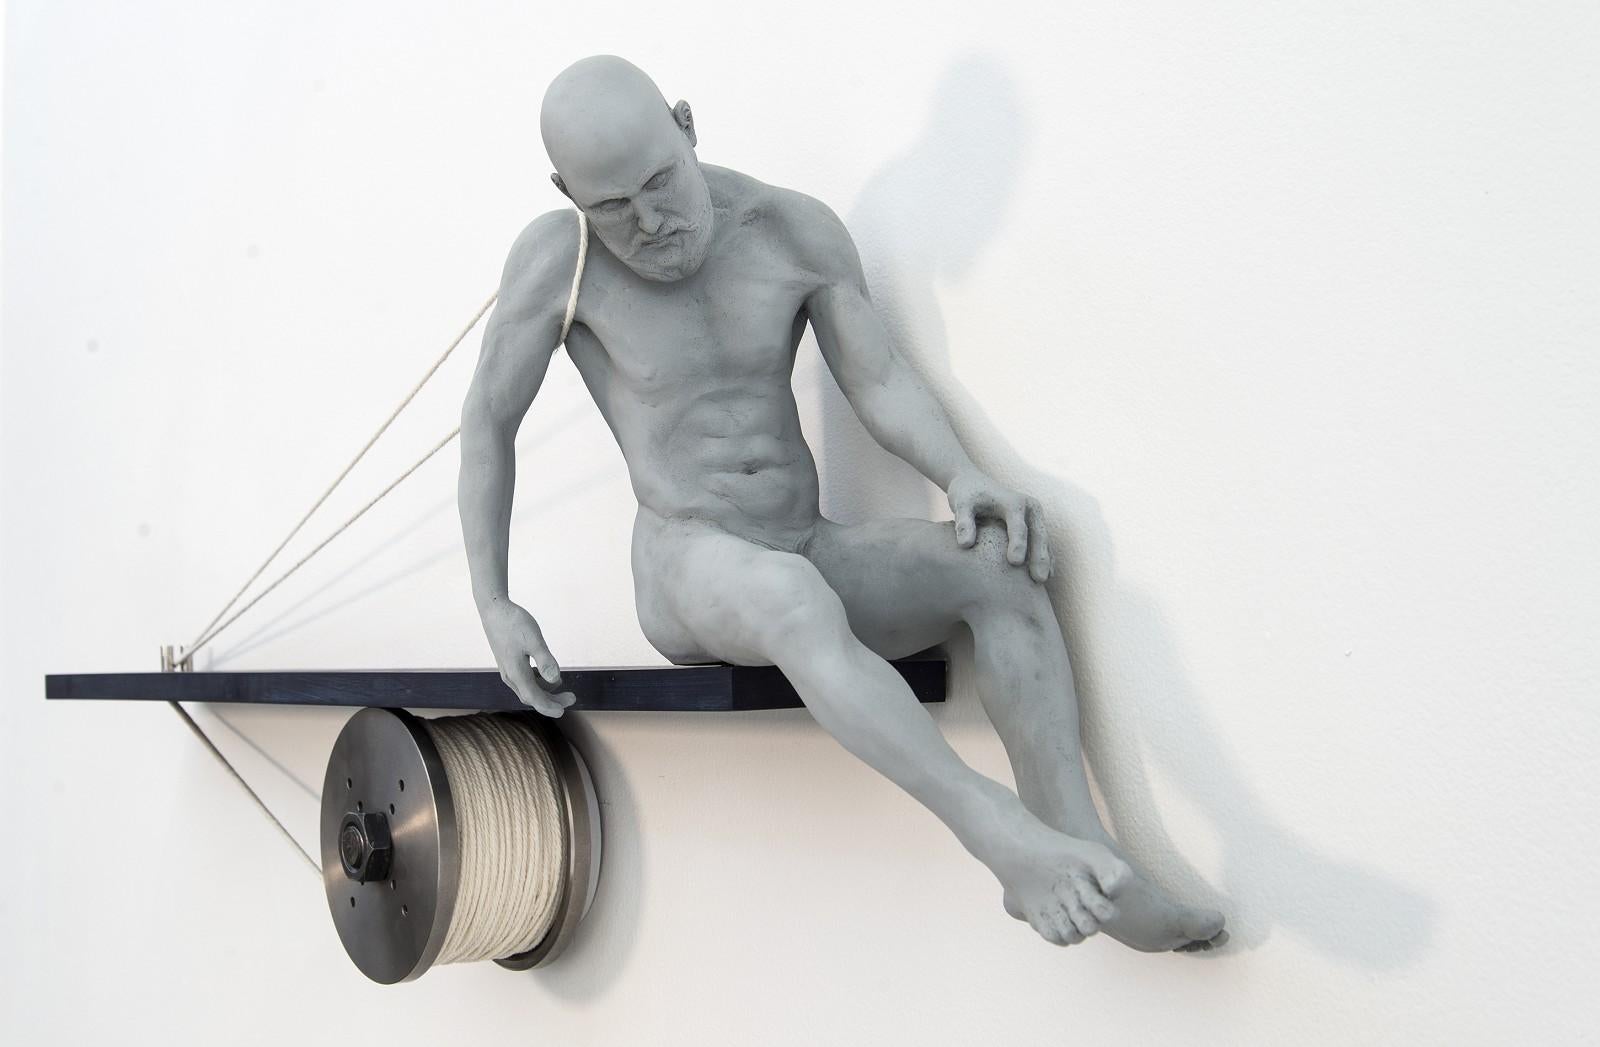 Tethered 1/9 – geistig, männlich, nackt, Figur, Mischtechnik, Wandskulptur – Sculpture von W.W. Hung